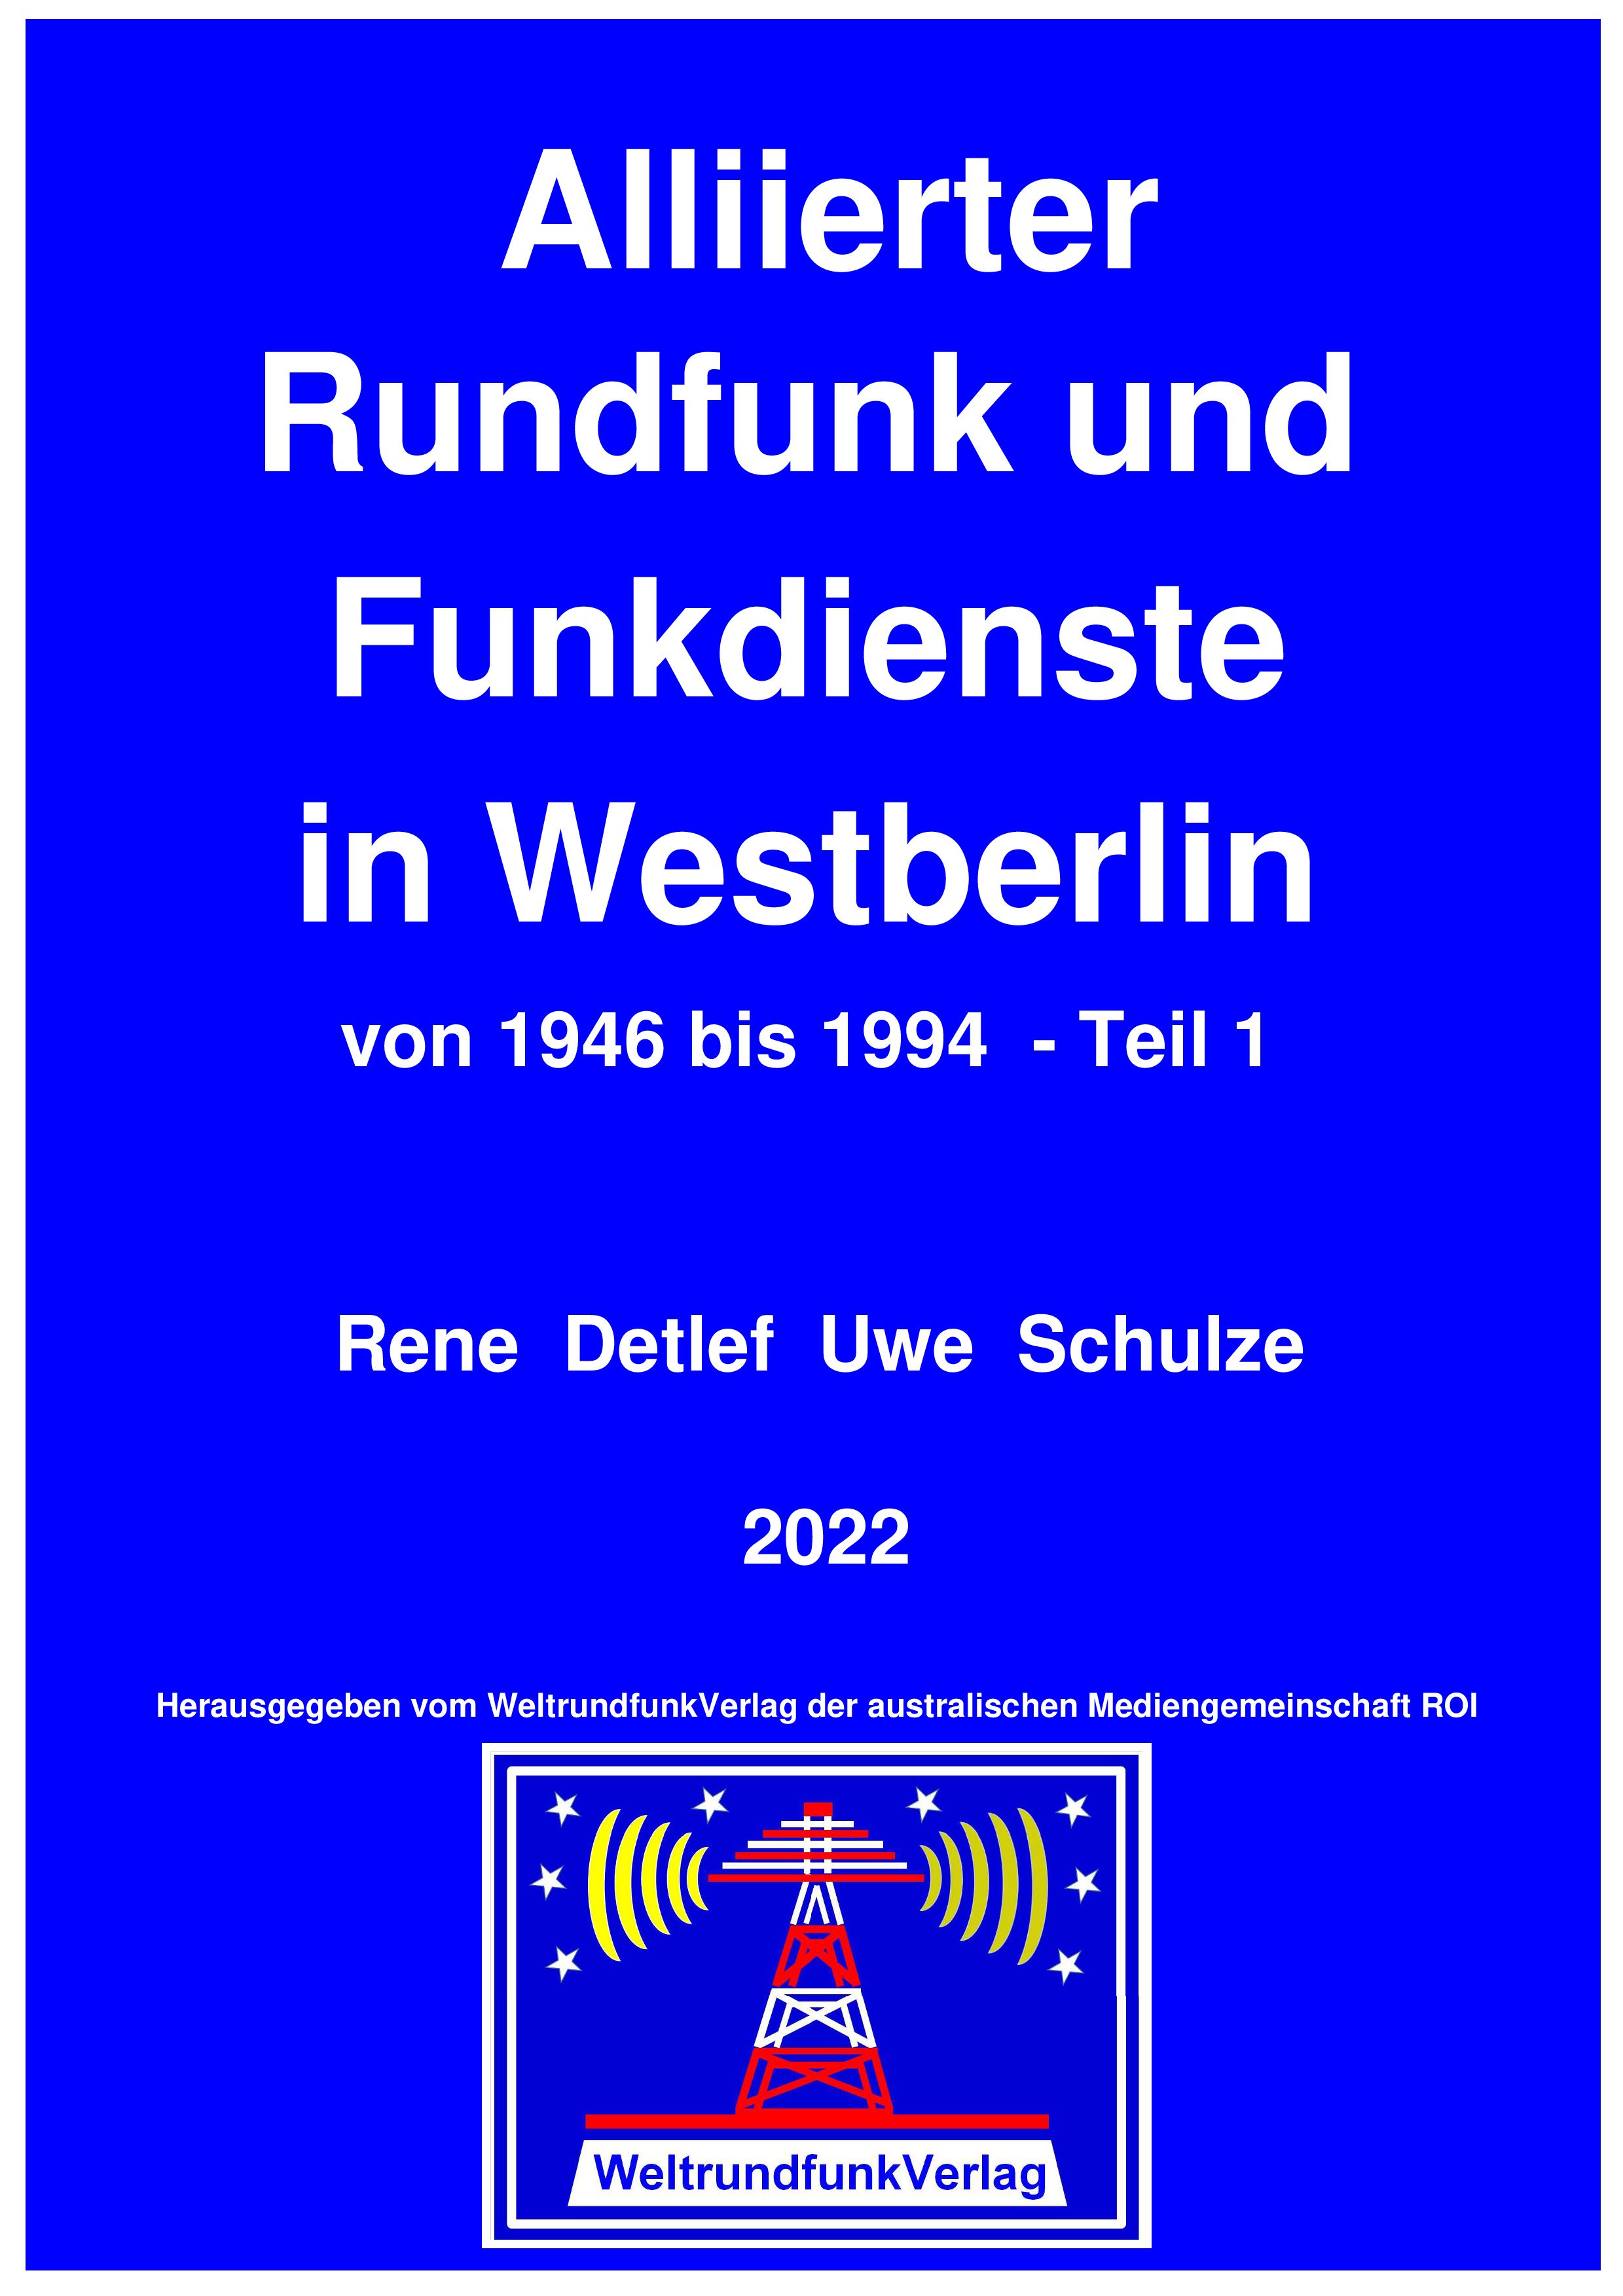 Zeitzeuge Rene Detlef Uwe Schulze berichtet in seinem Buch: Alliierter Rundfunk und Funkdienste in Westberlin von 1946 bis 1994 - 
Teil 1,  farbig, 615 Seiten, 2022, Leseprobe